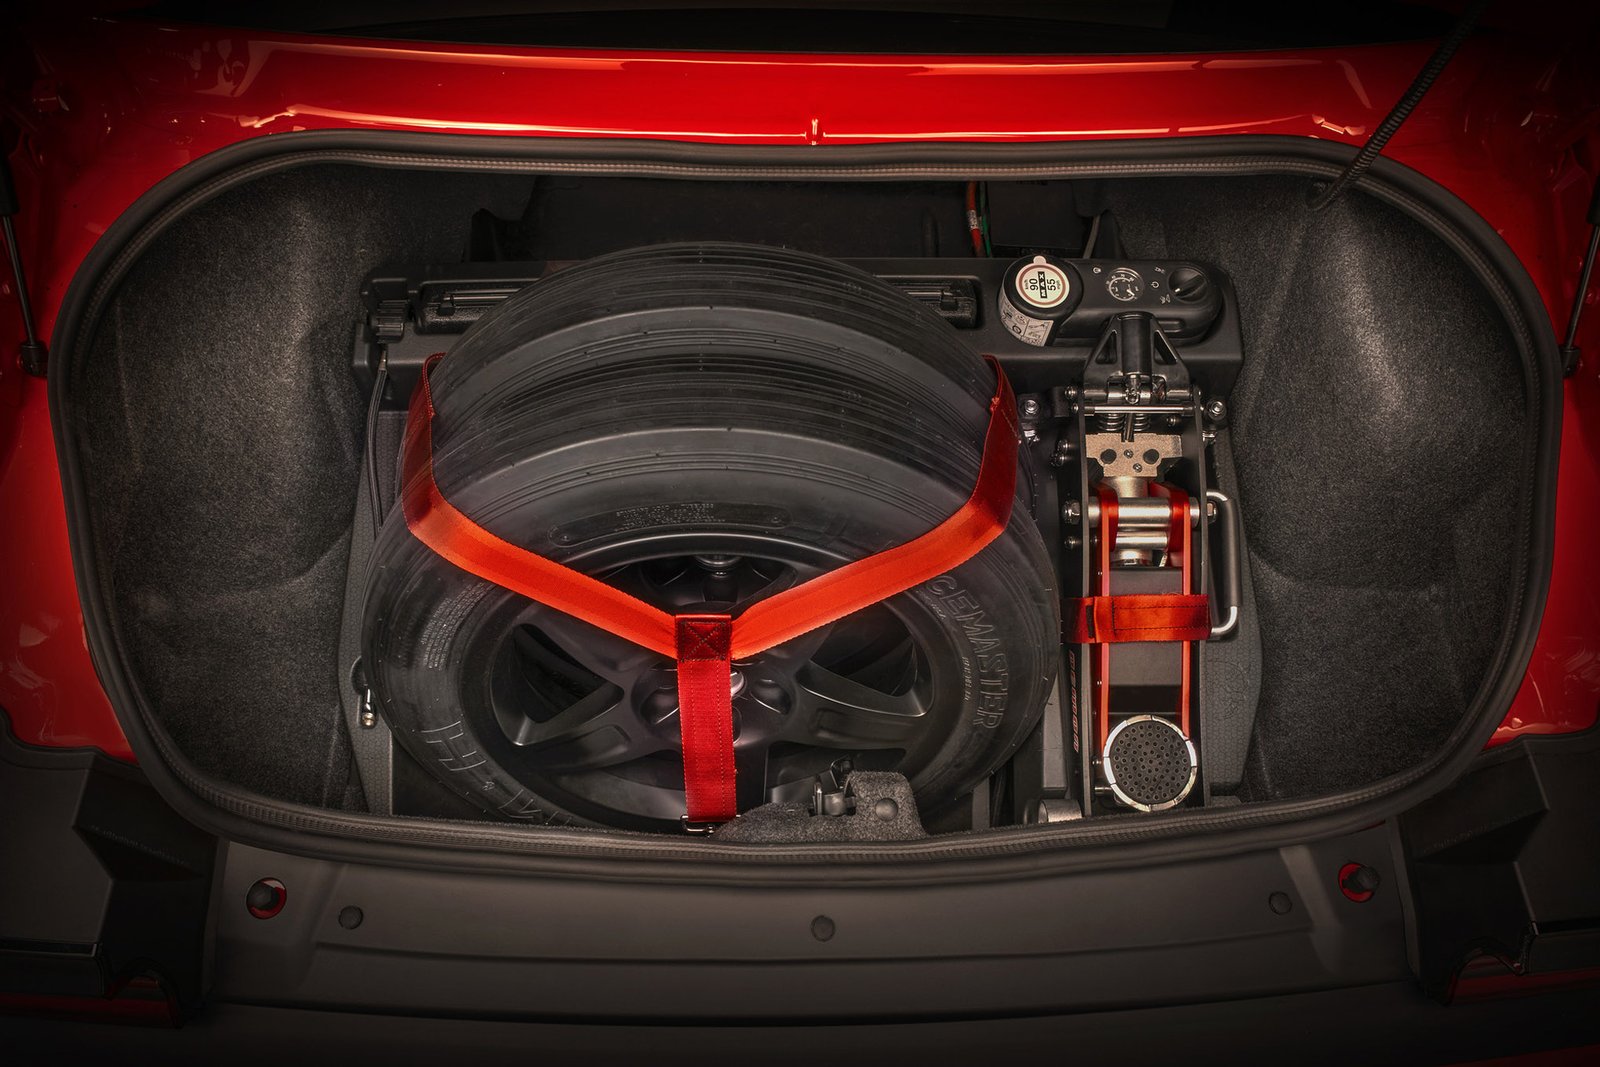 2018 Dodge Challenger SRT Demon Drag Kit features a foam case th